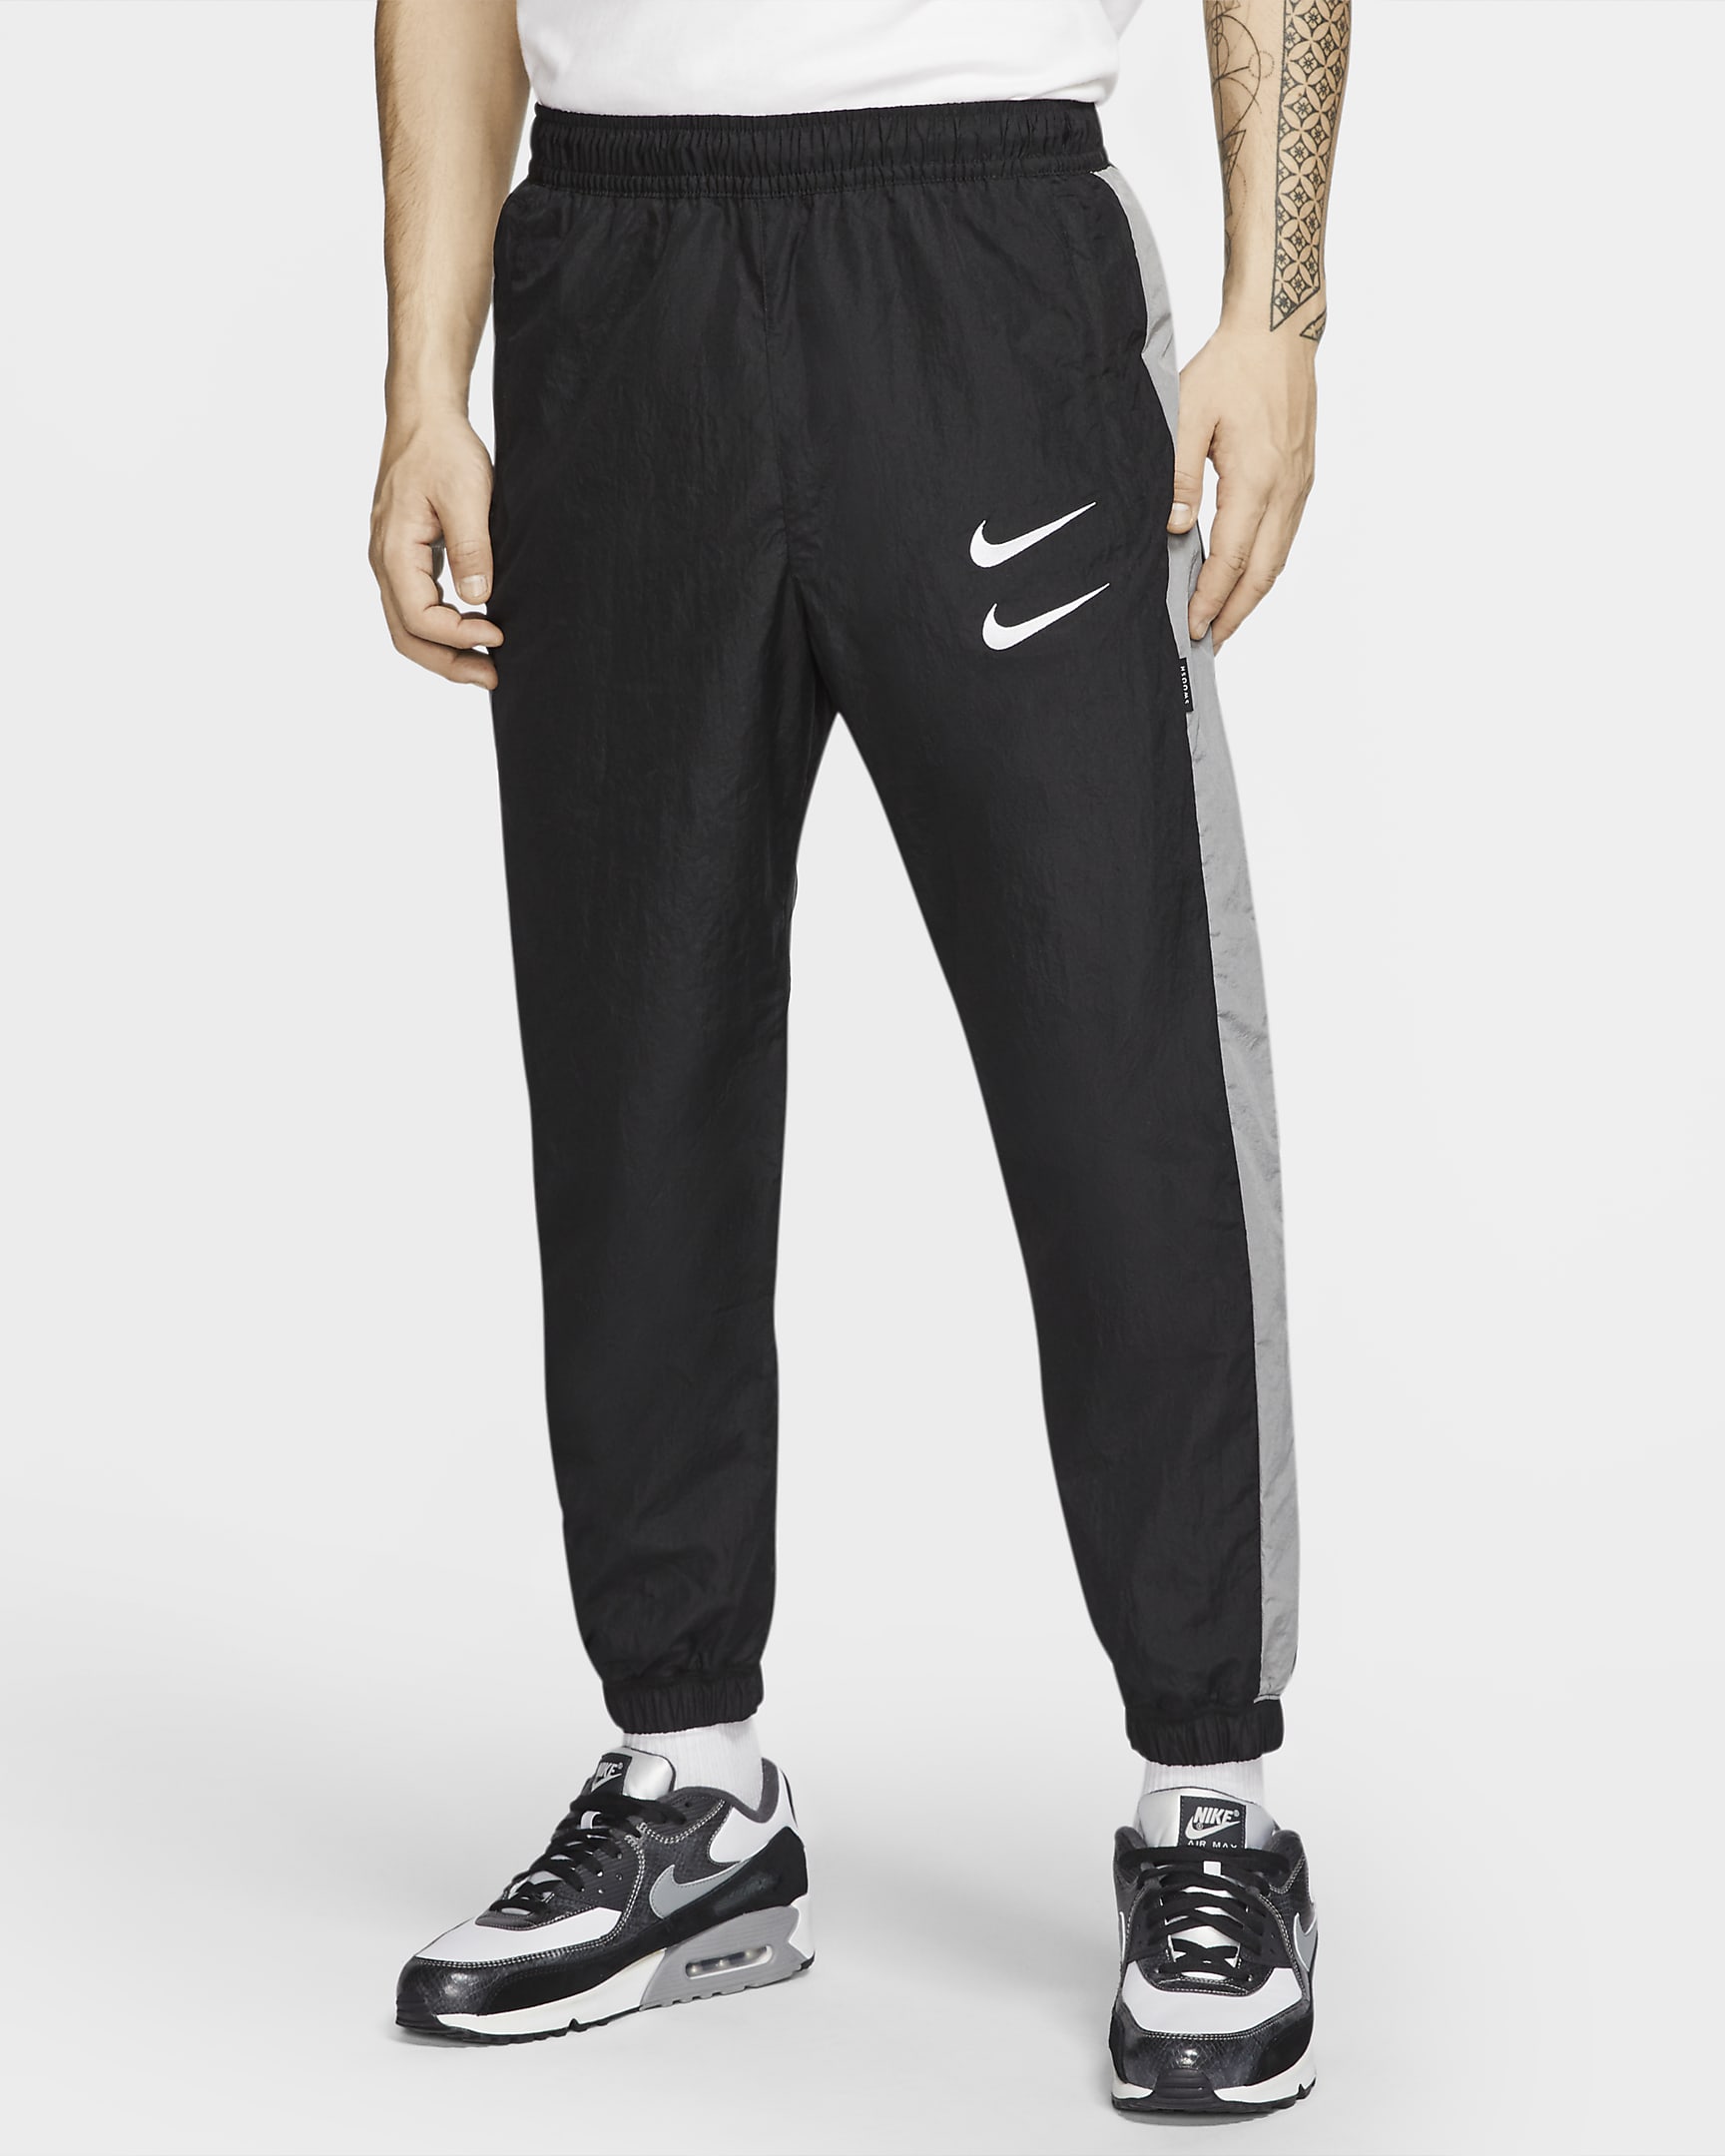 Nike Sportswear Swoosh Men's Woven Trousers. Nike VN